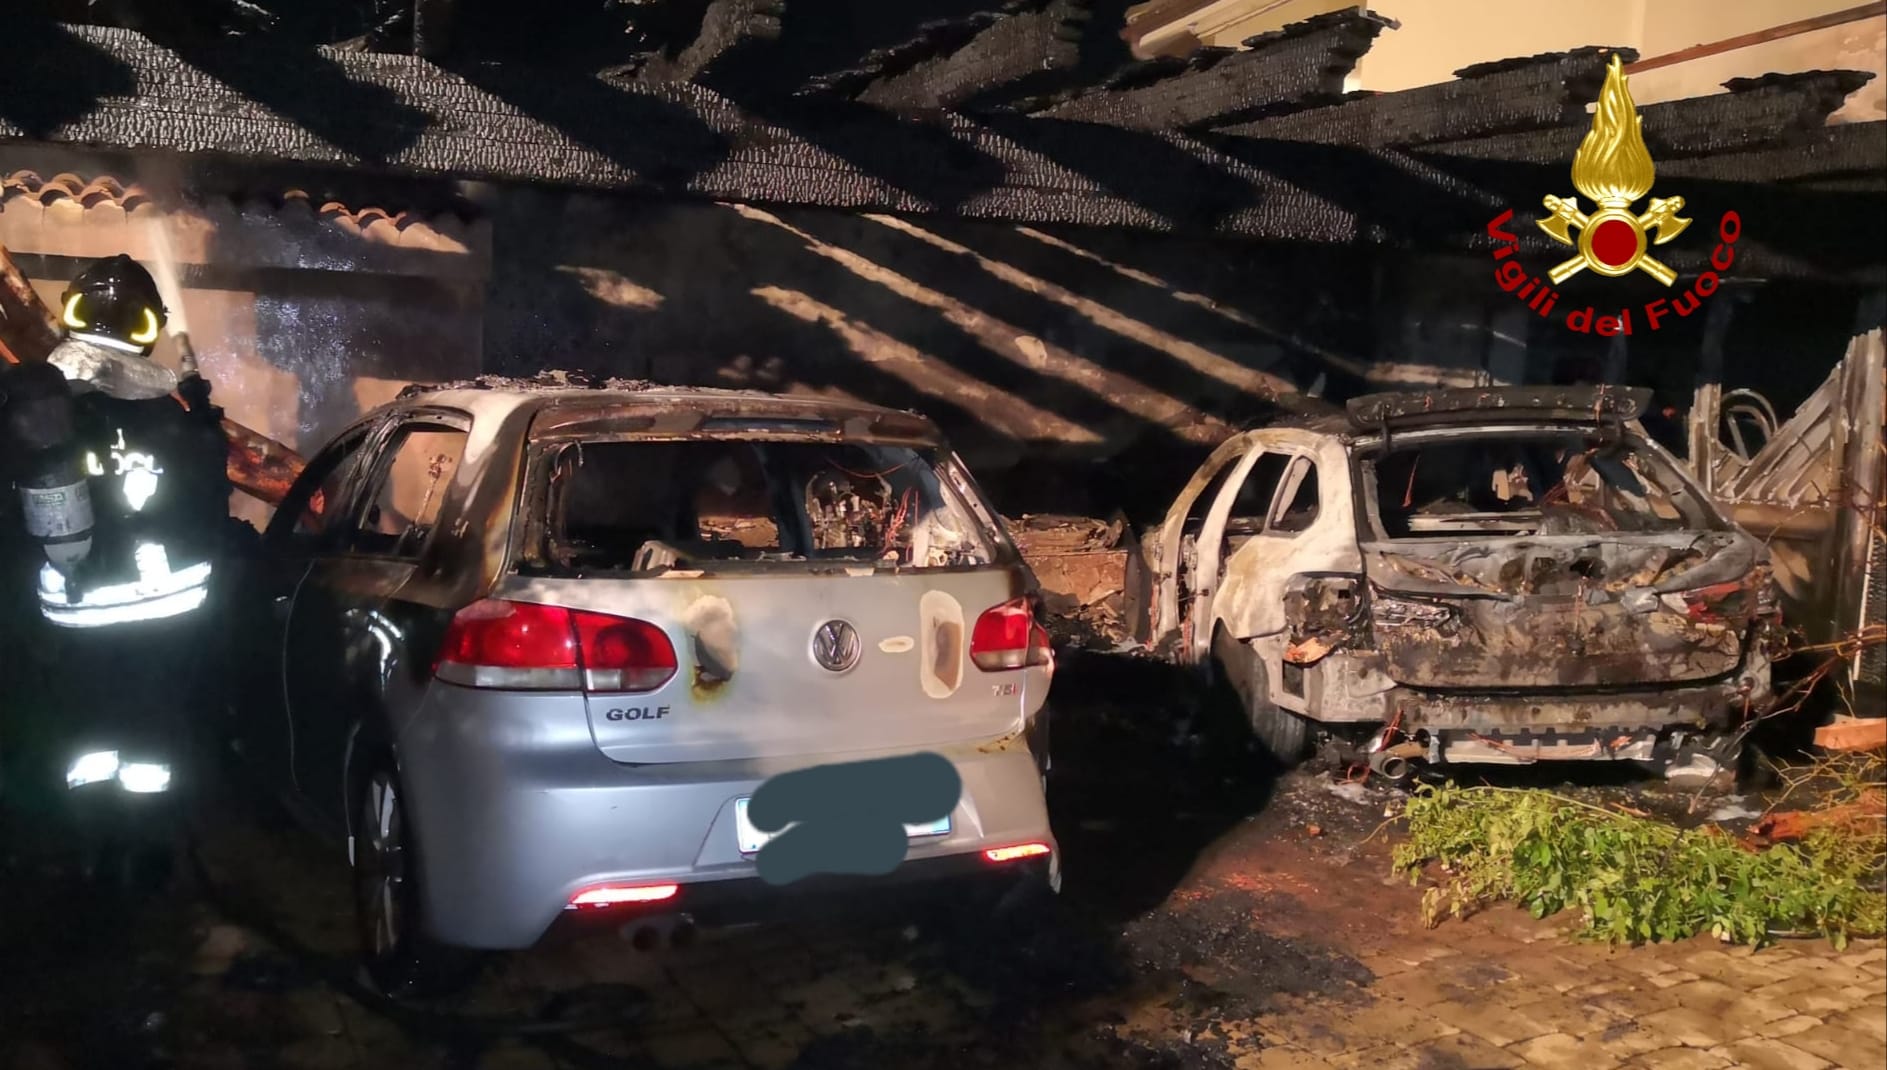 Auto distrutte da incendio: si indaga